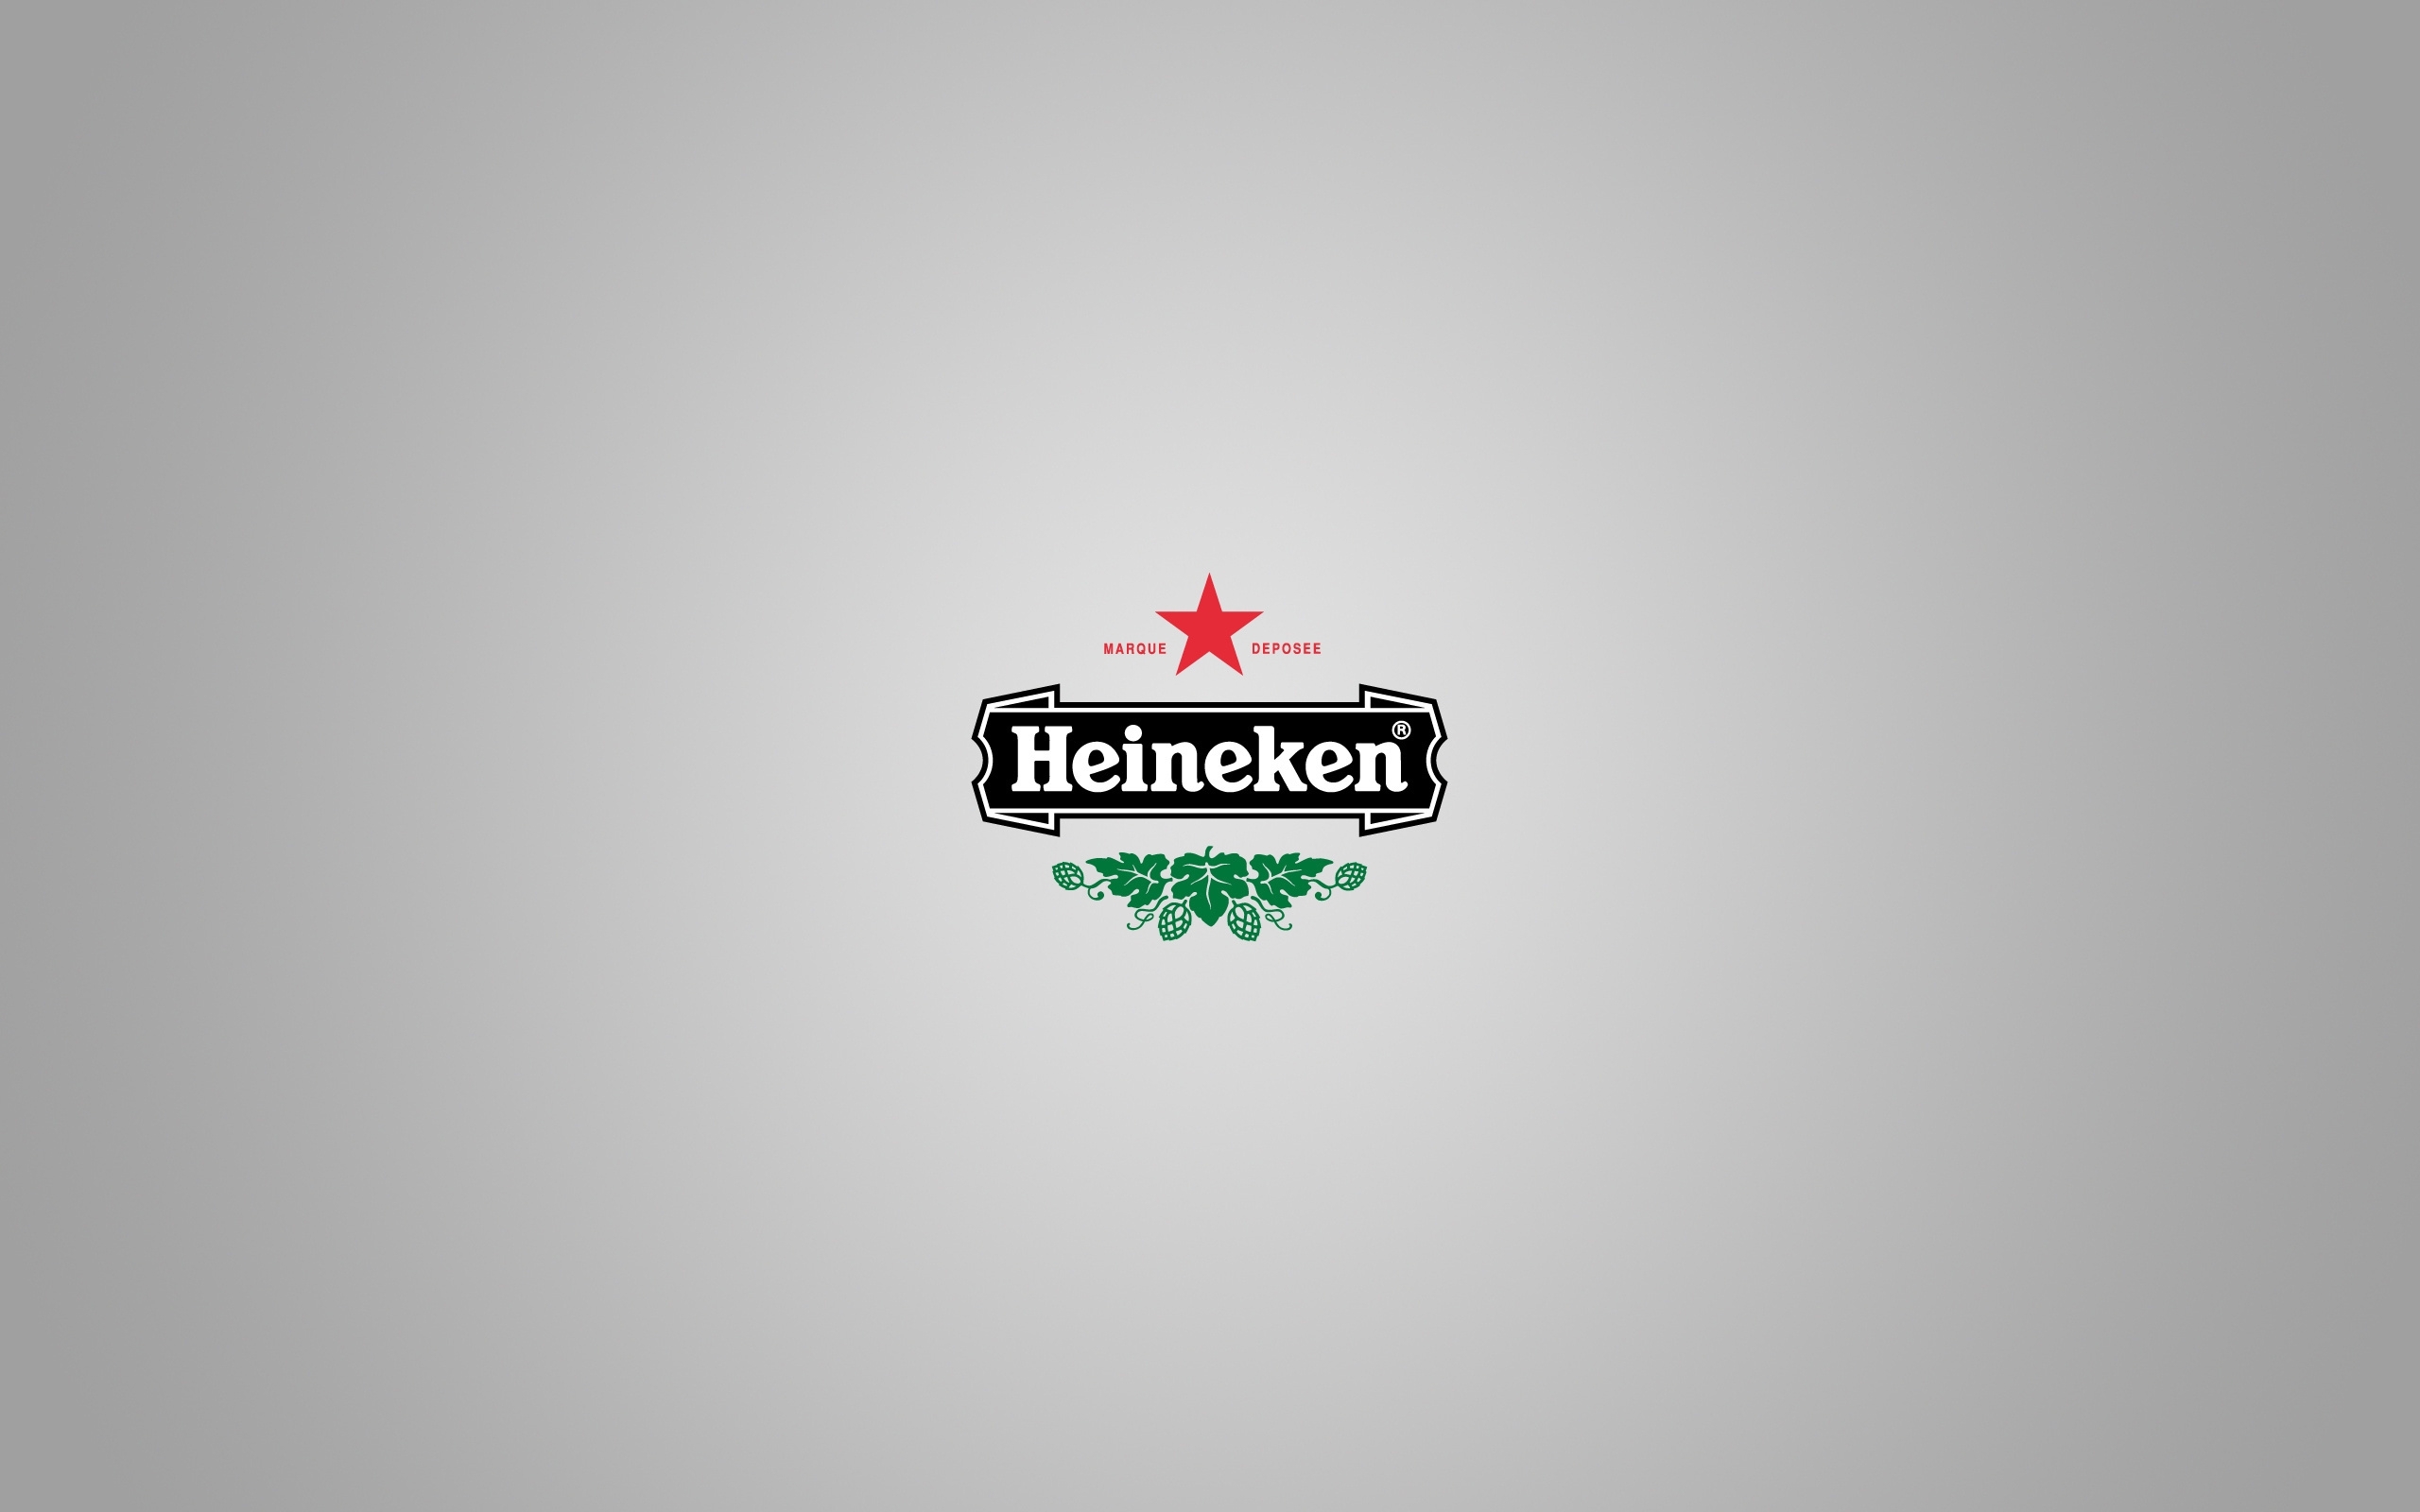 Heineken Puter Wallpaper Desktop Background